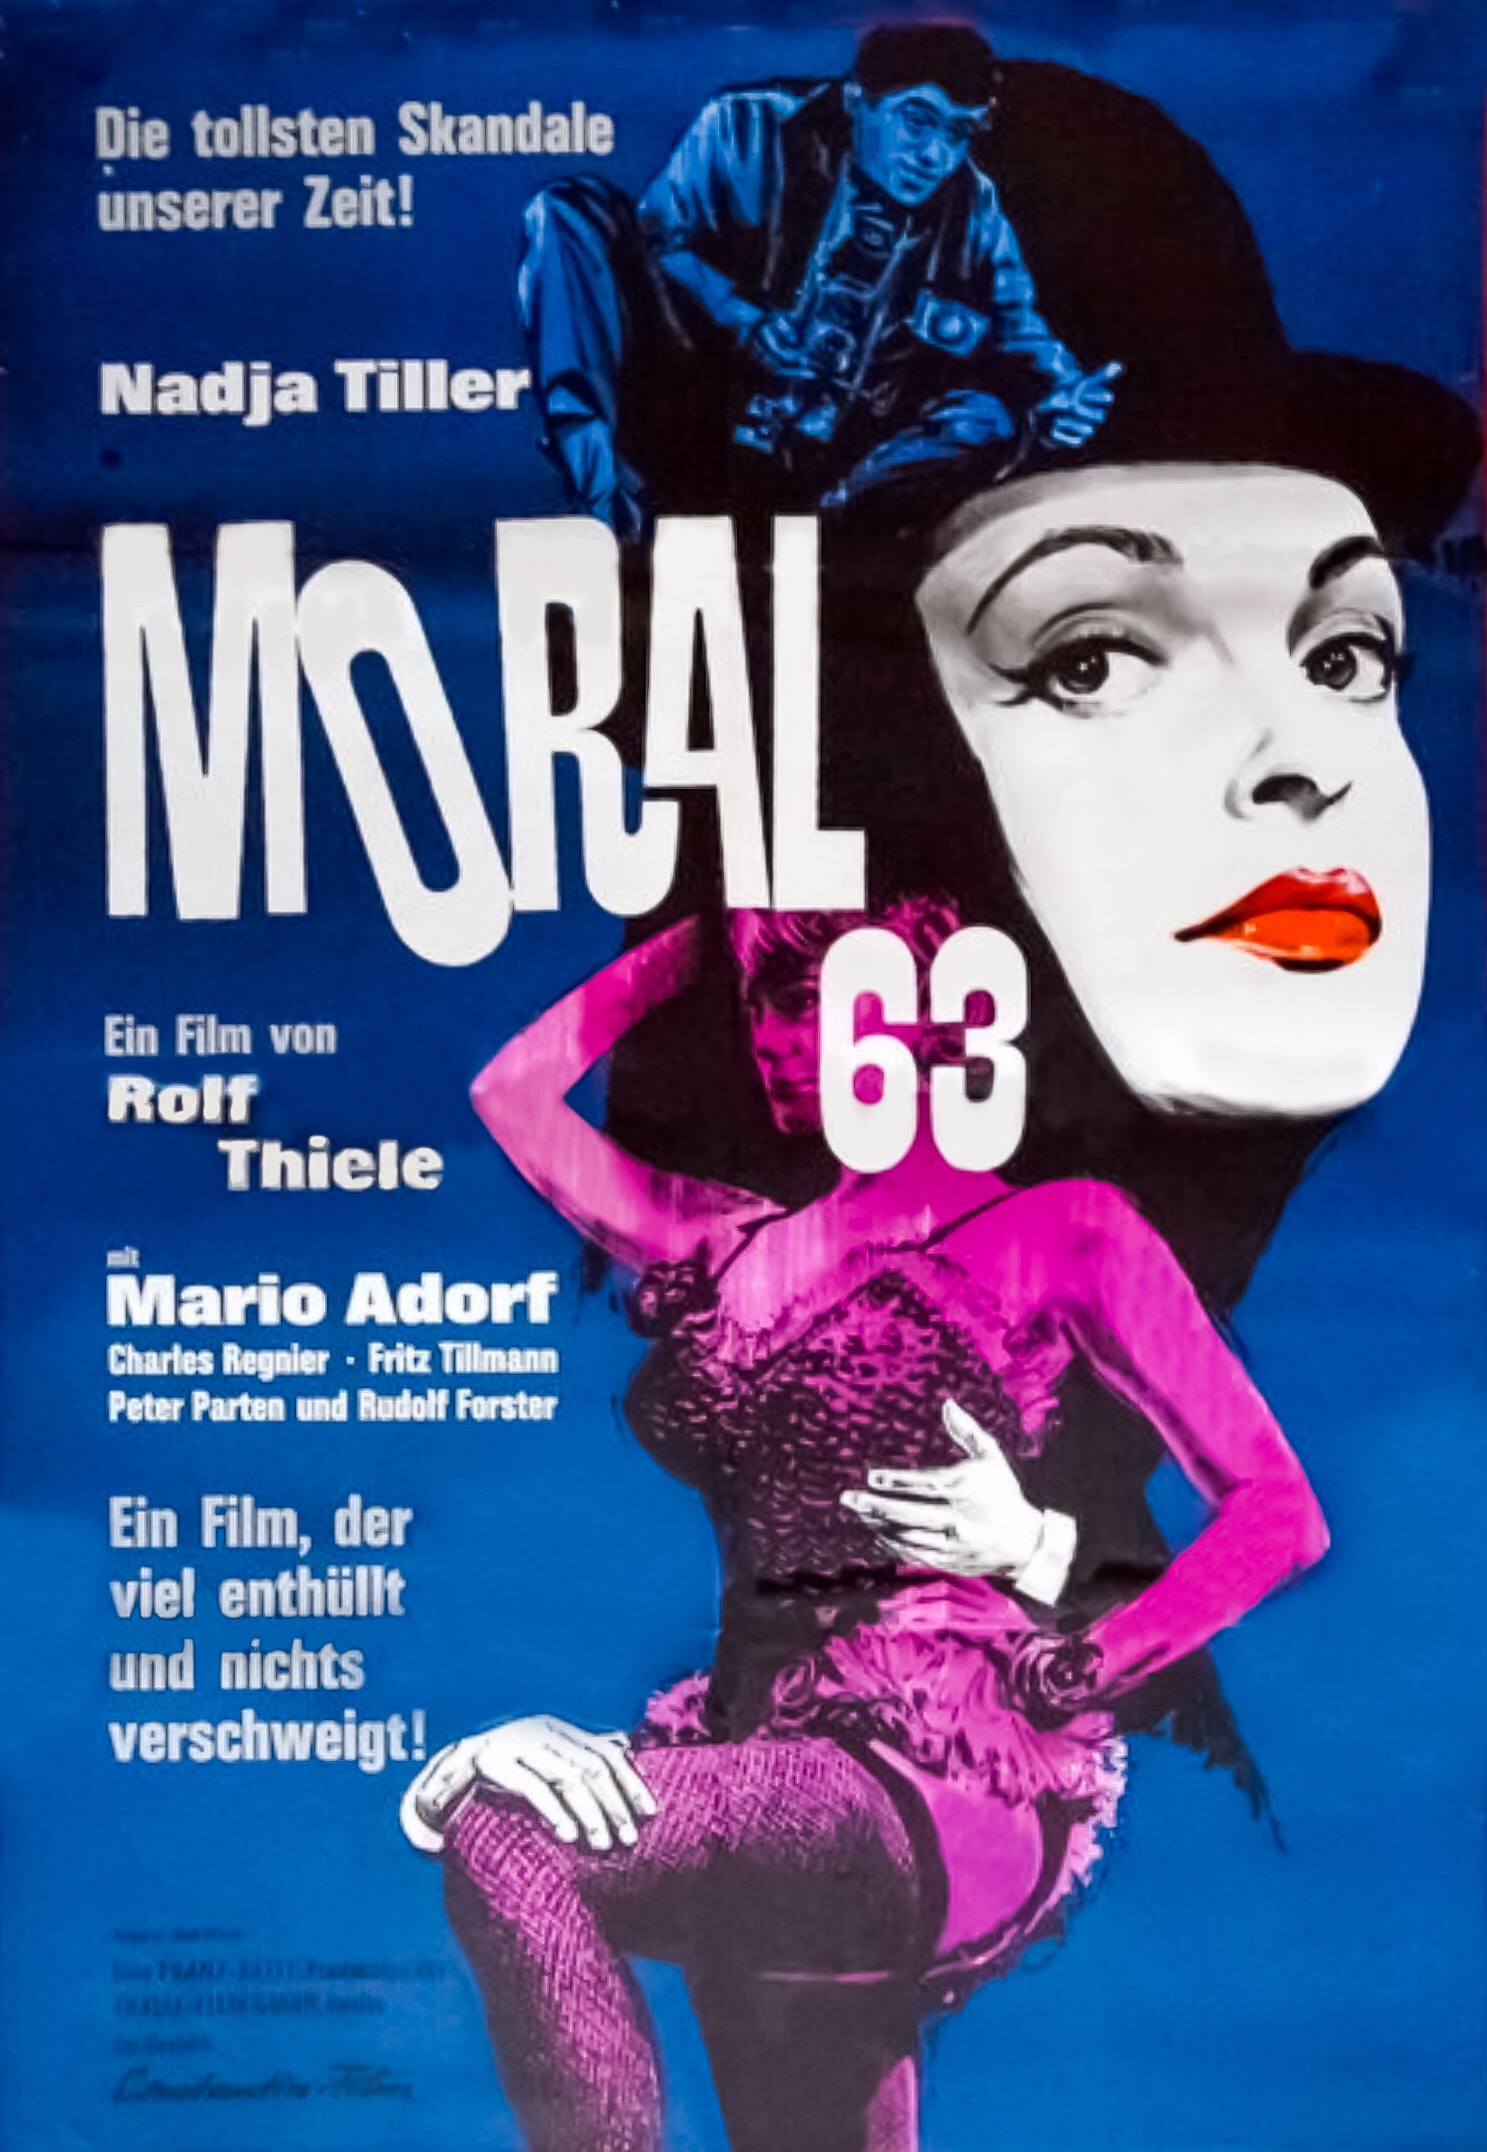 Moral 63 (1963) Screenshot 1